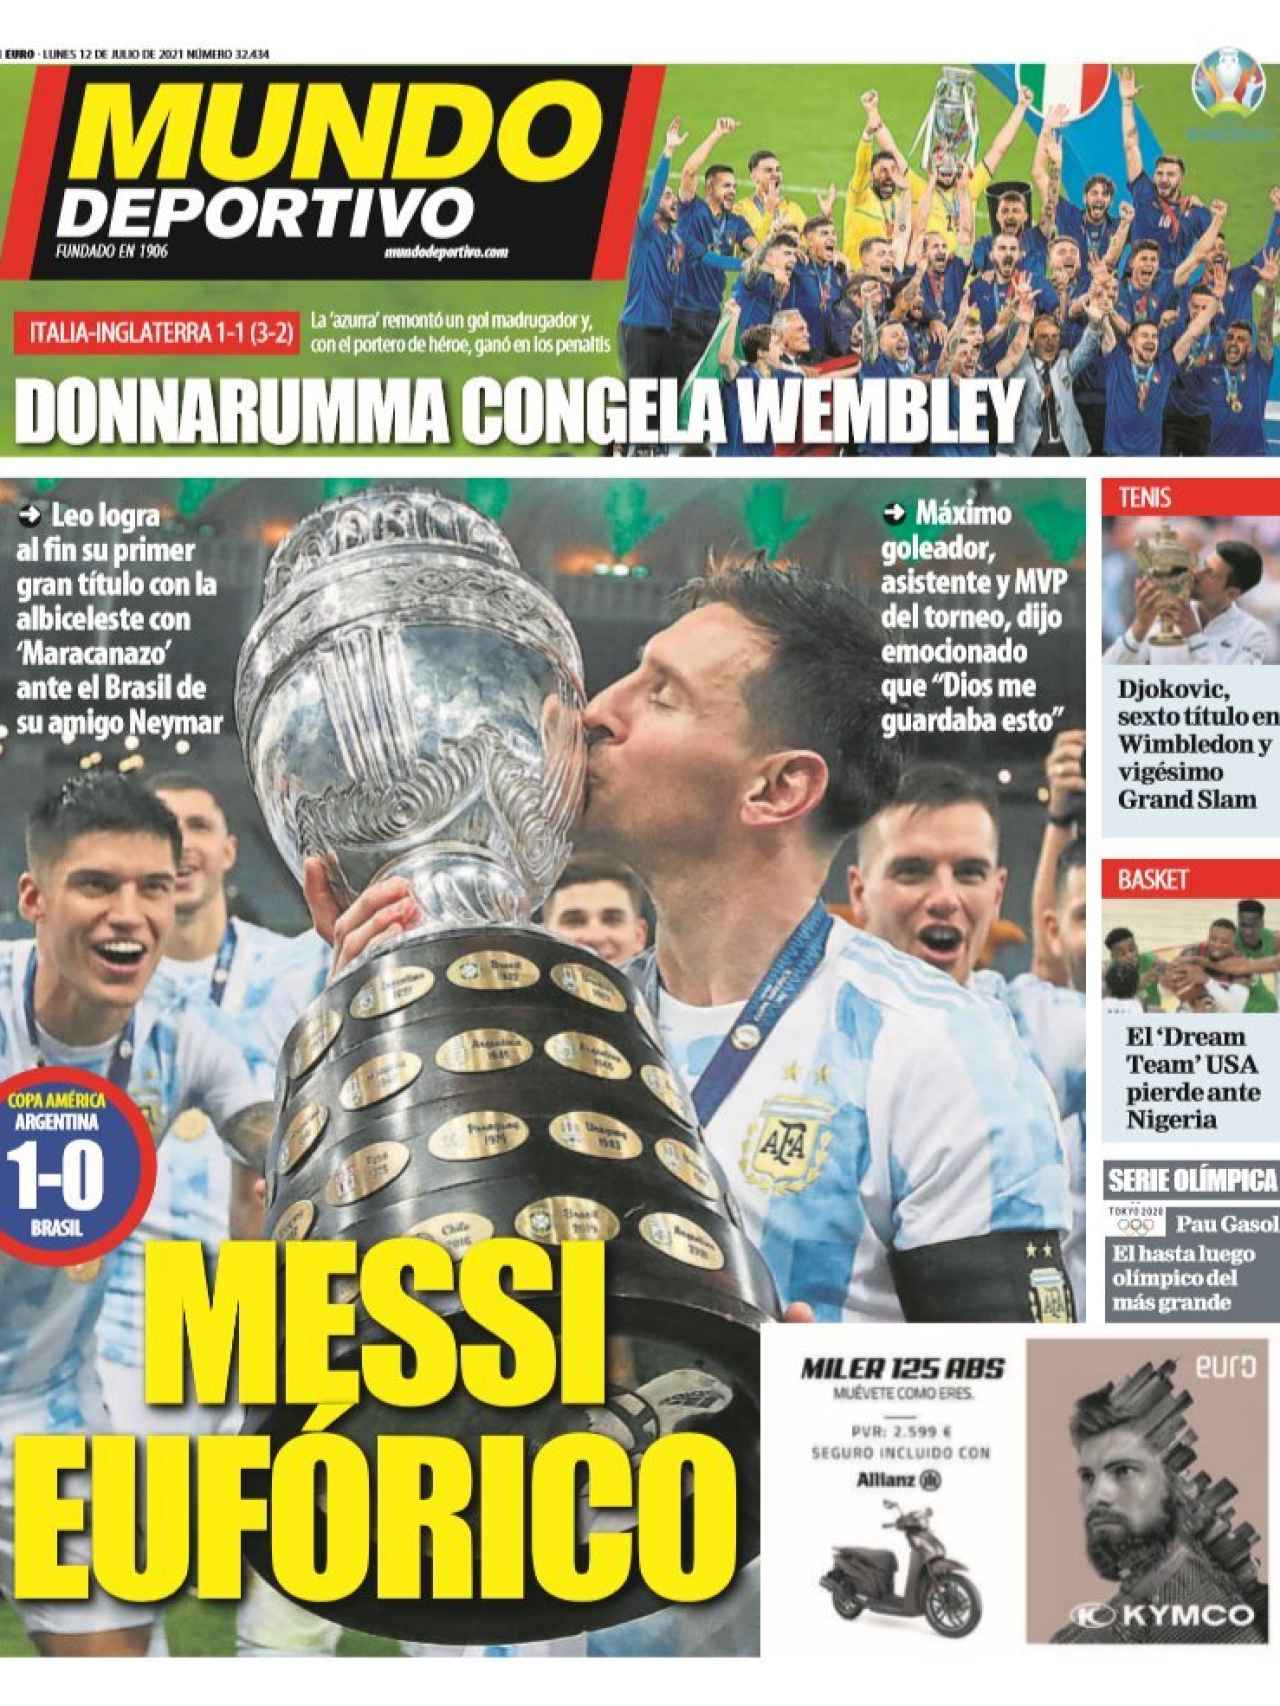 La portada del diario Mundo Deportivo (12/07/2021)